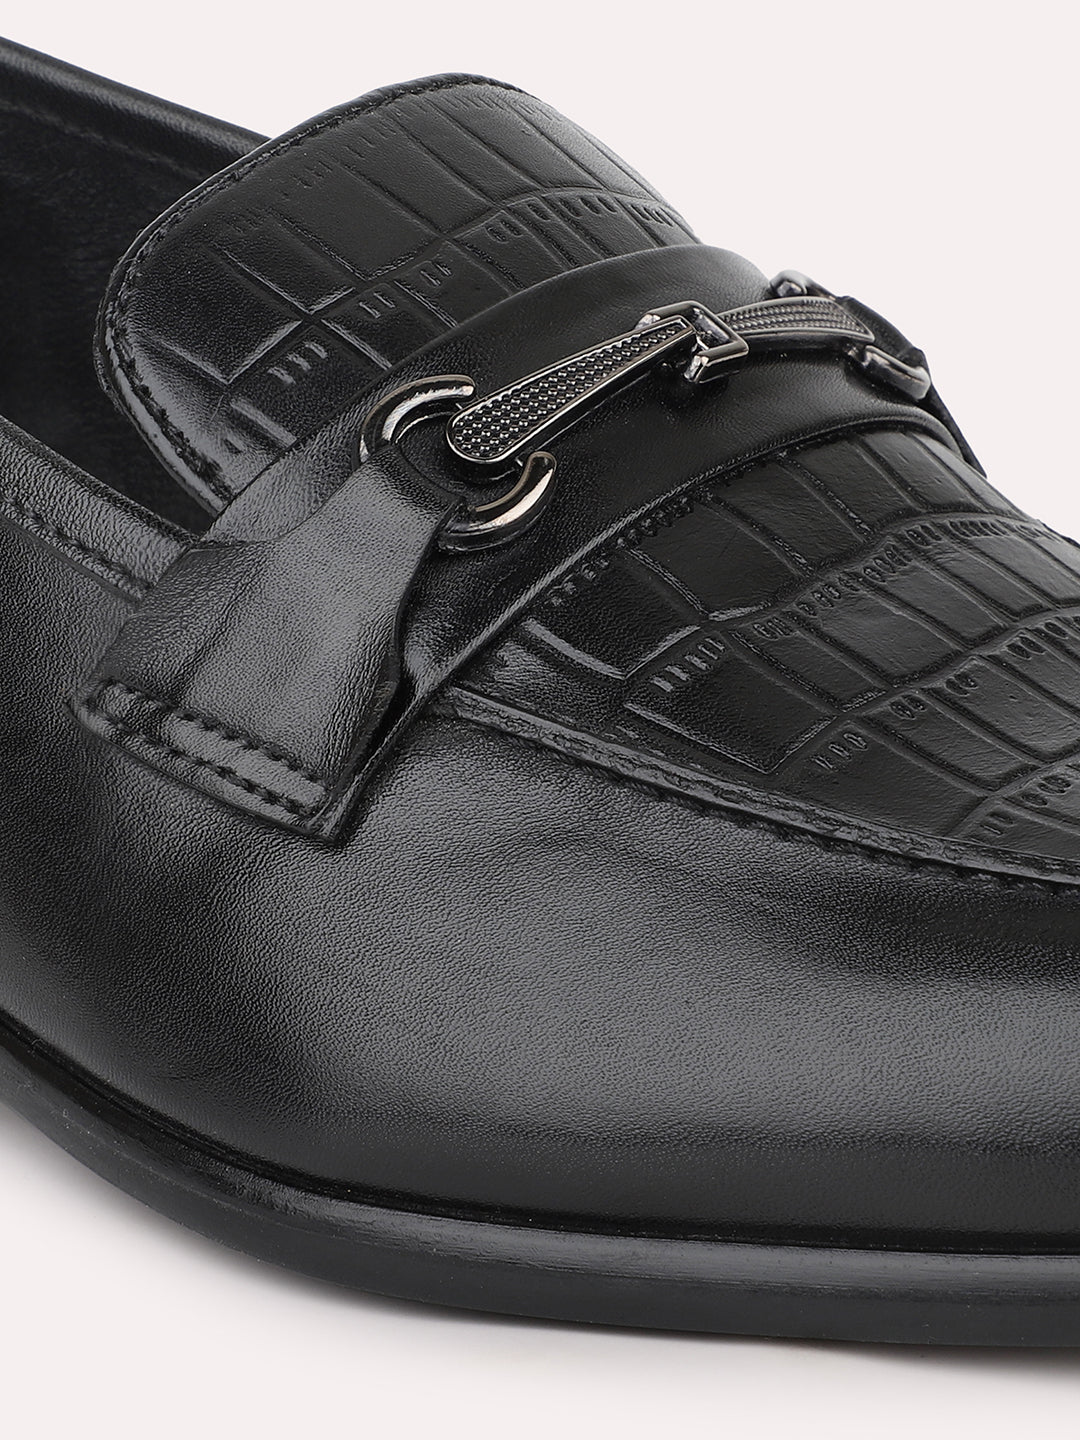 Atesber Black Textured Fomral Moccasin Shoes For Men